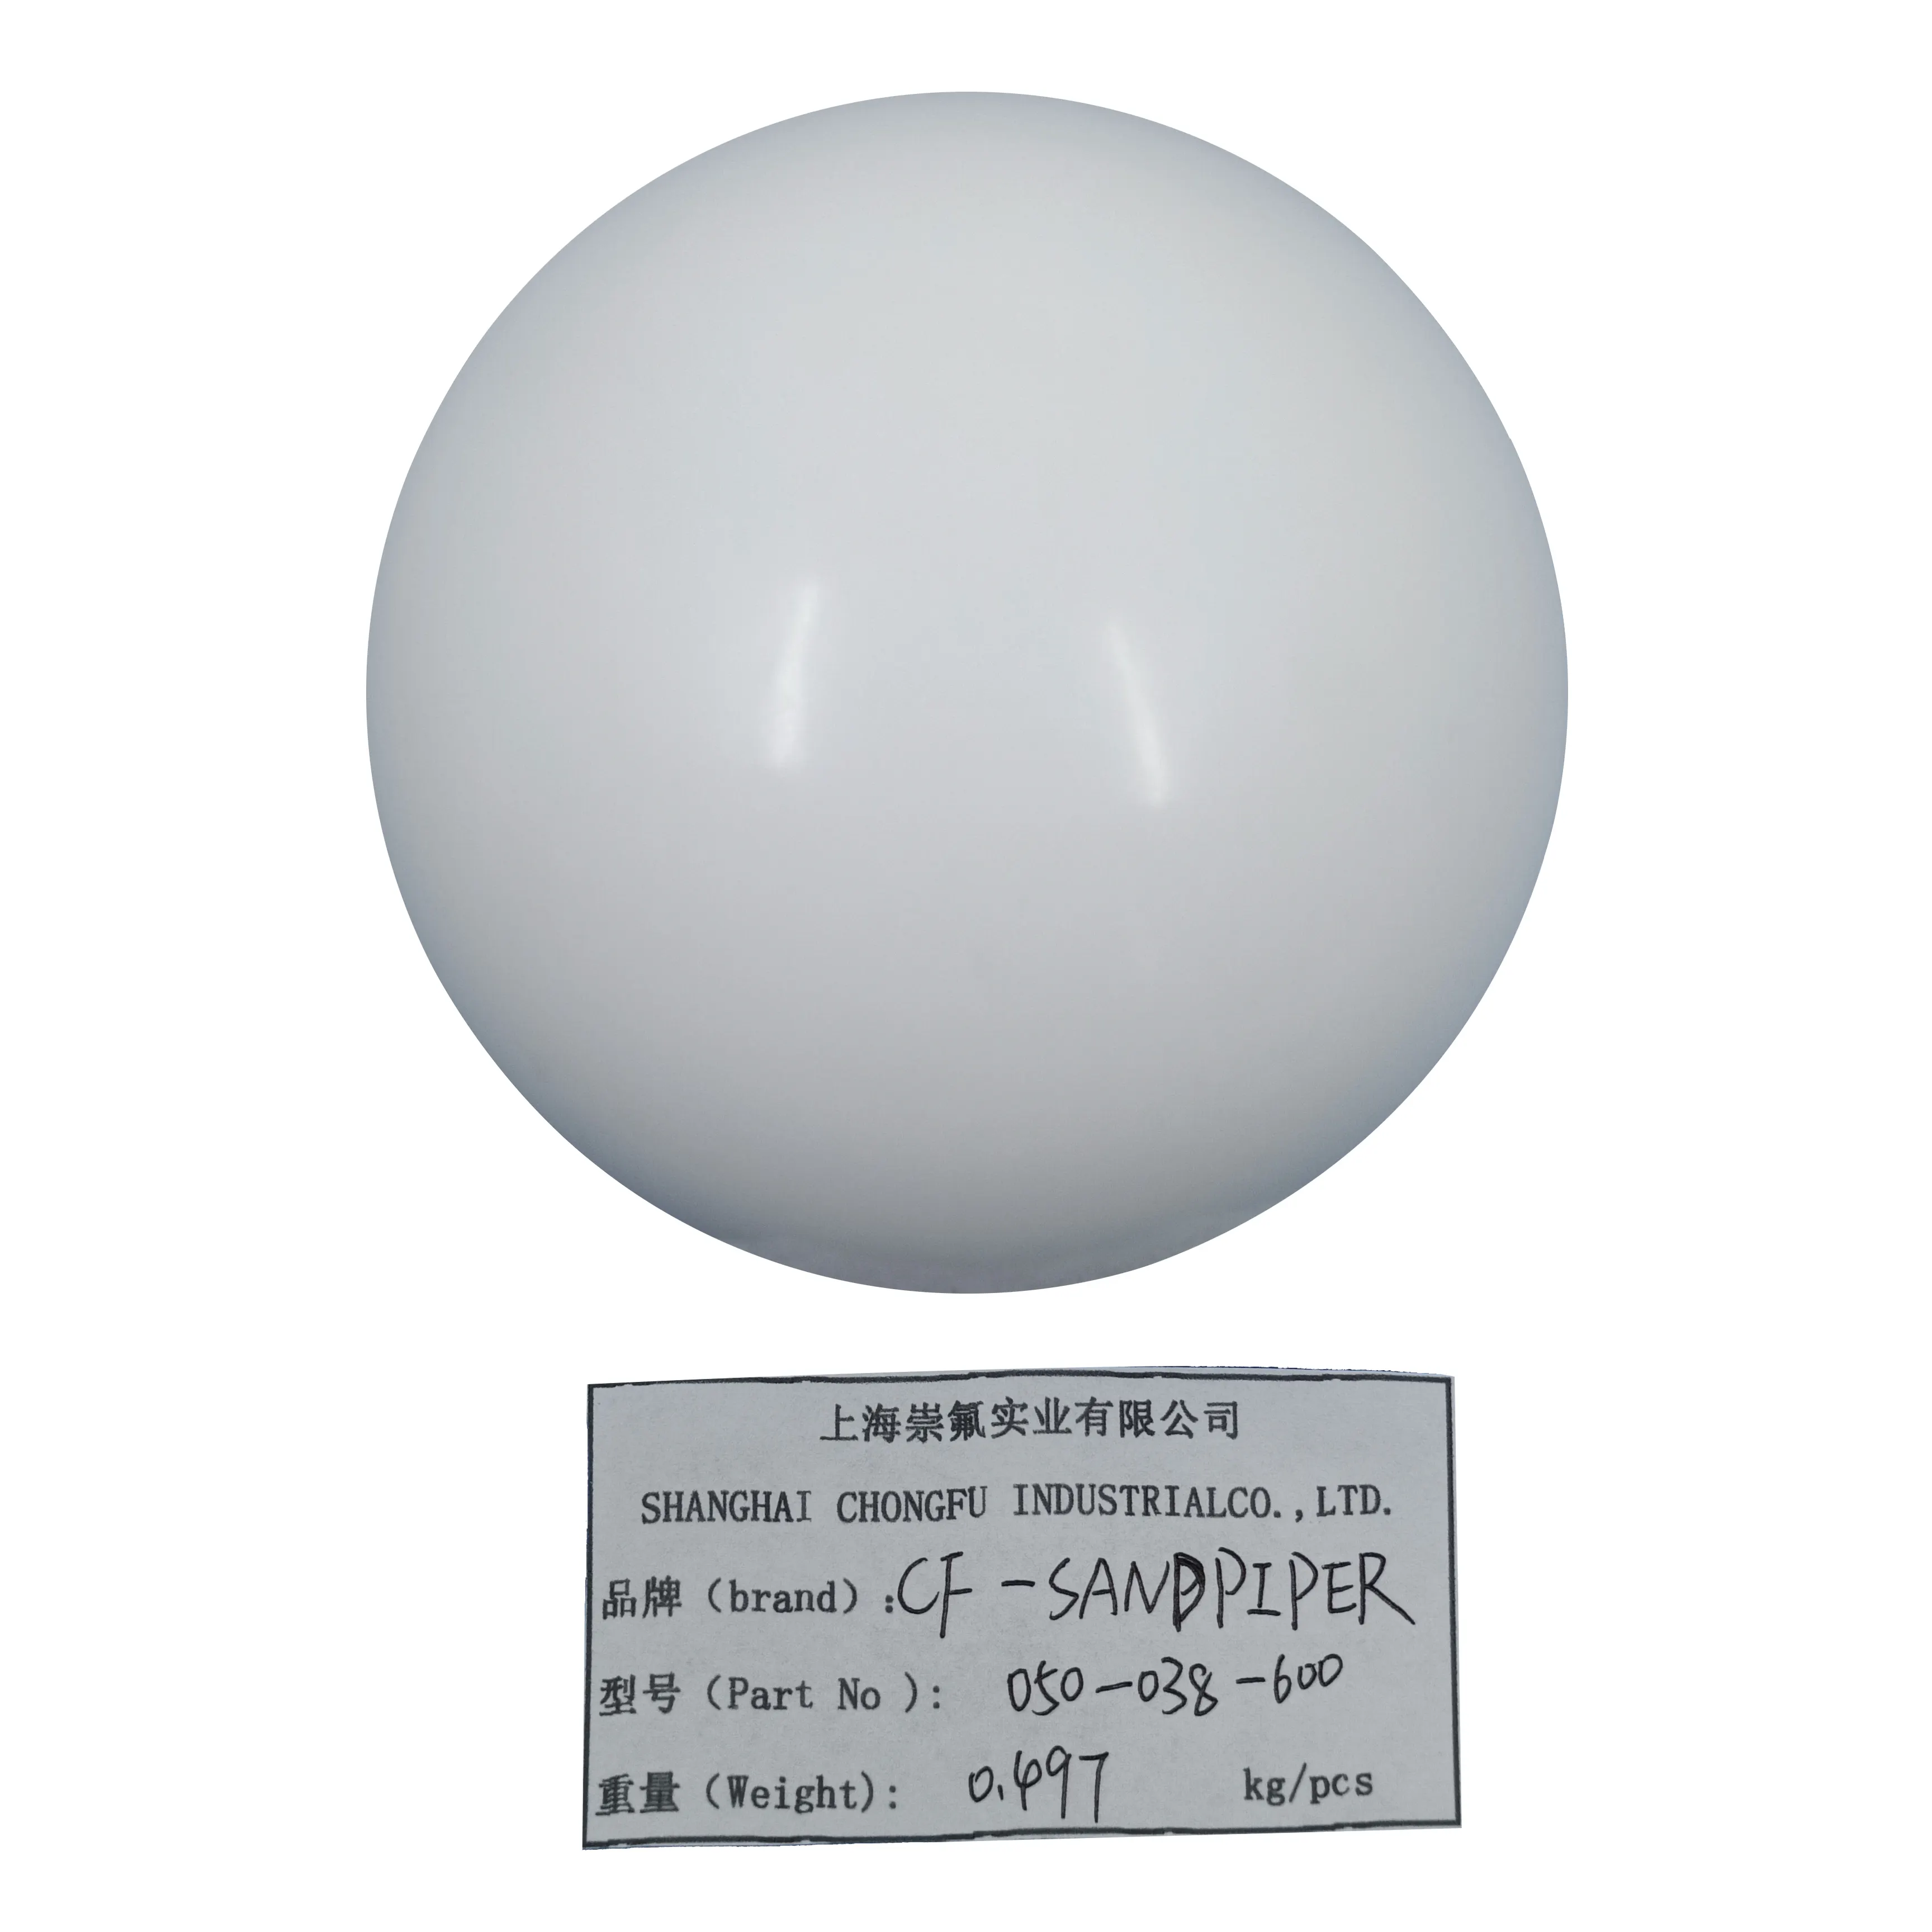 सैंडपाइपर के लिए PTFE CF 050-038-600 रबर वाल्व बॉल, विभिन्न आकार और सामग्री के लिए वायवीय डायाफ्राम पंप पार्ट्स की आपूर्ति